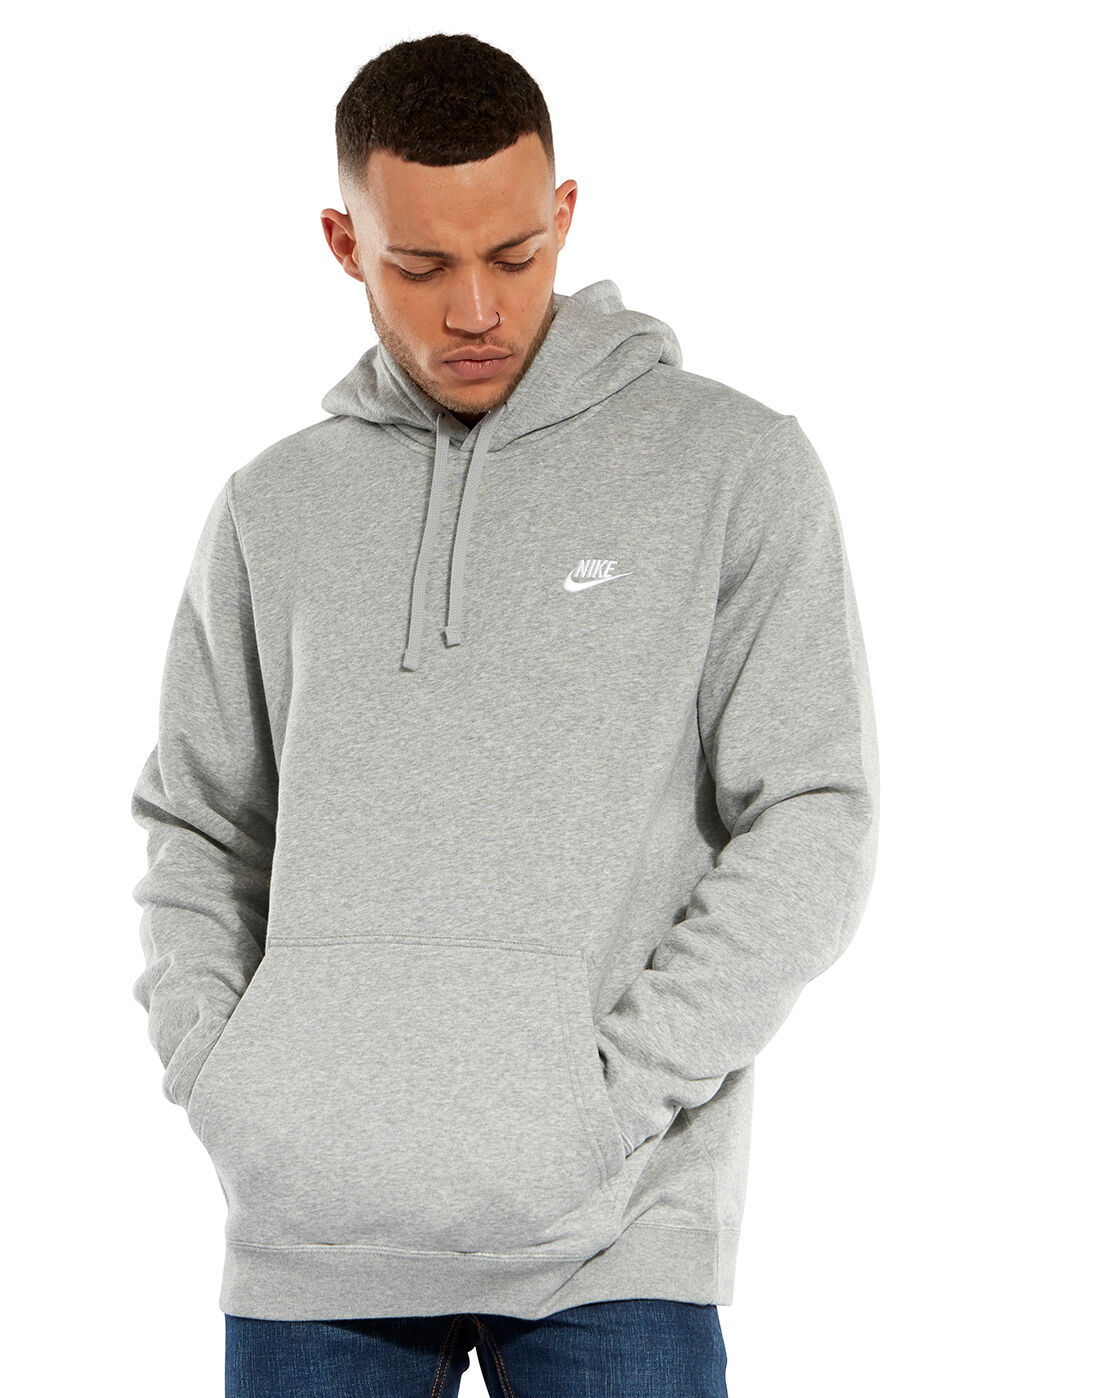 Men's Grey Nike Pullover Hoodie | Life 